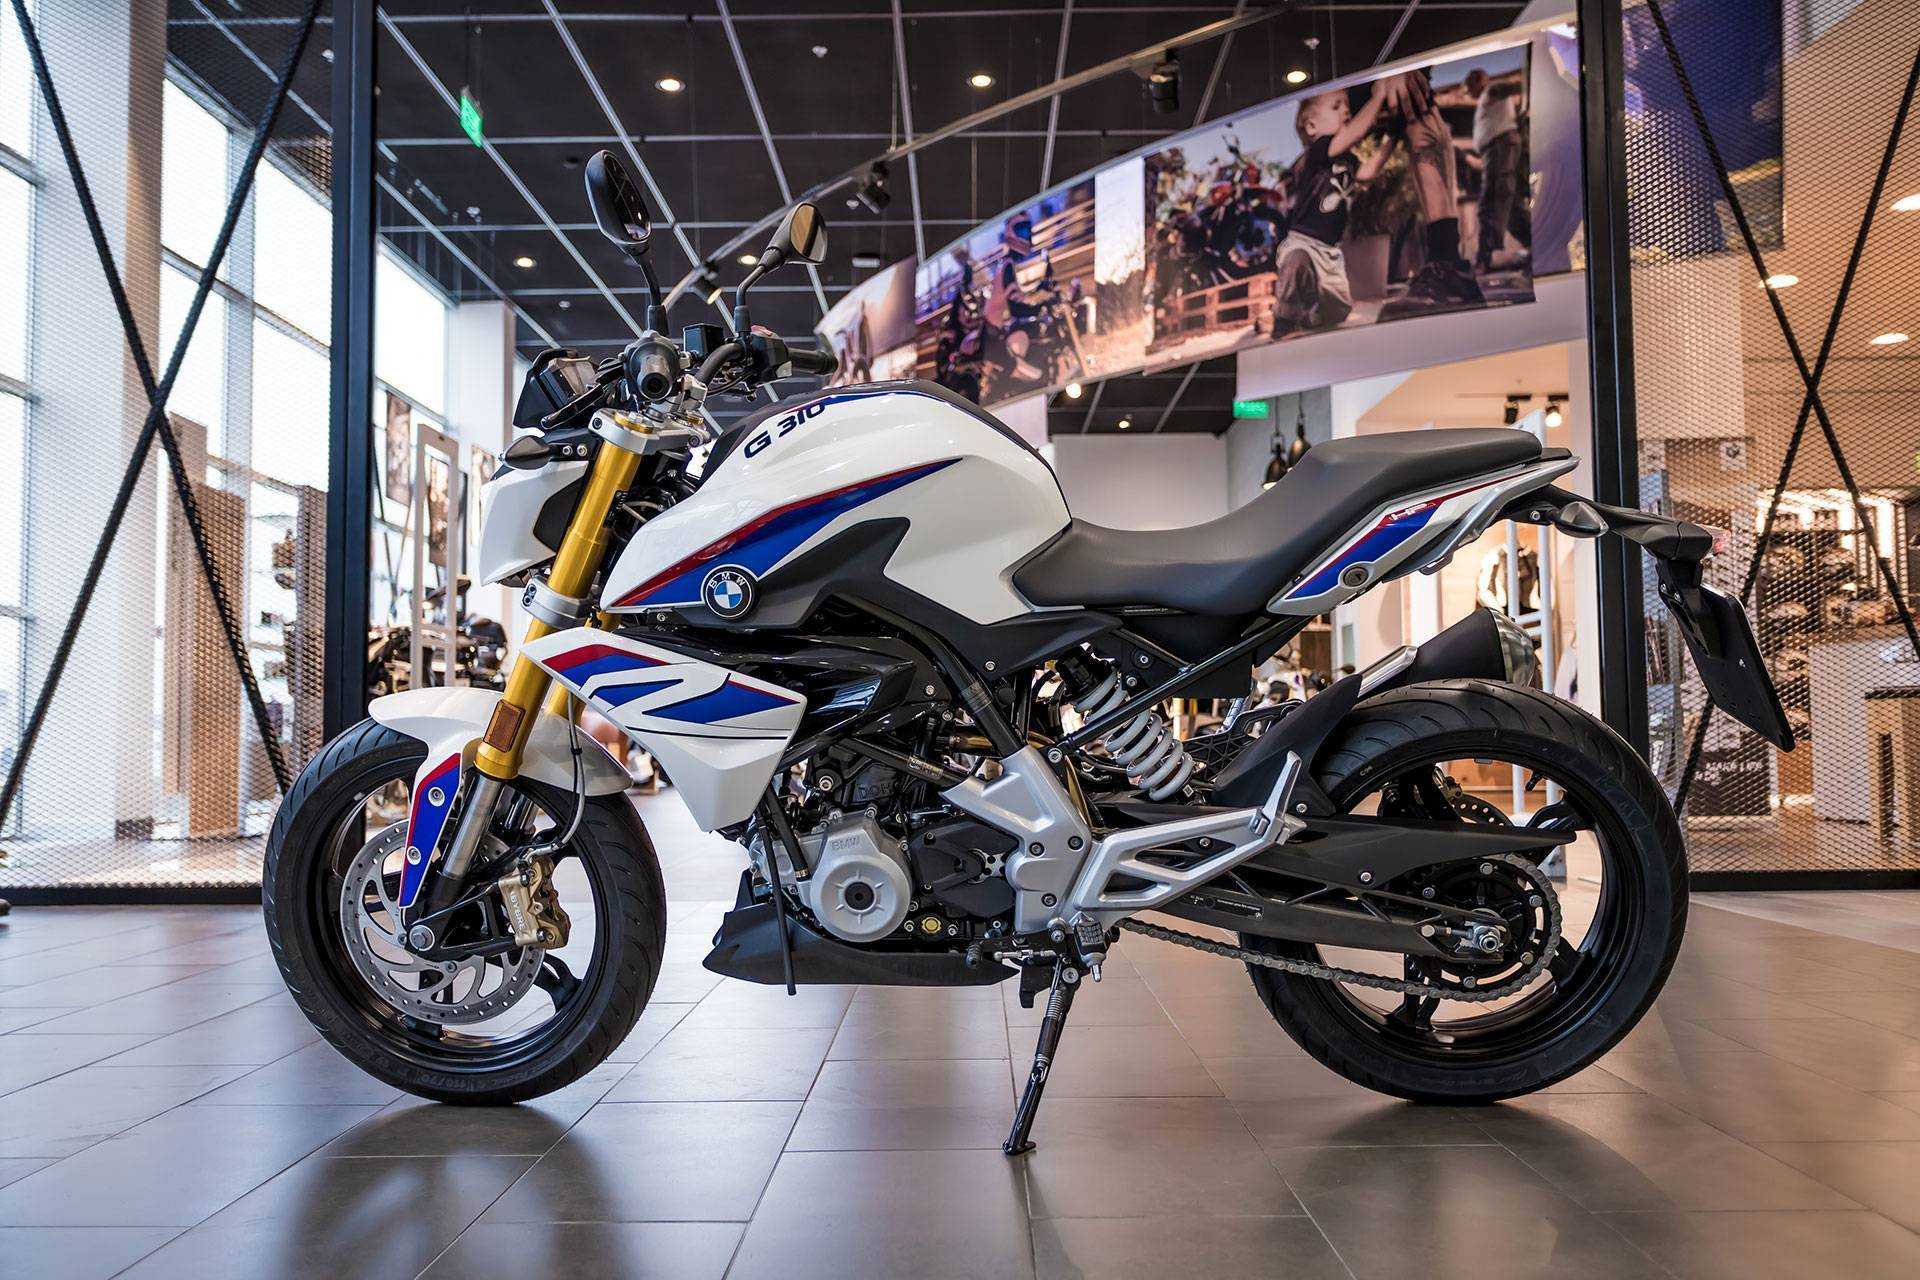 Компания BMW успешно выпускает лёгкий городской мотоцикл, собираемый в Индии Обзор, технические характеристики и отзывы владельцев BMW G 310 R